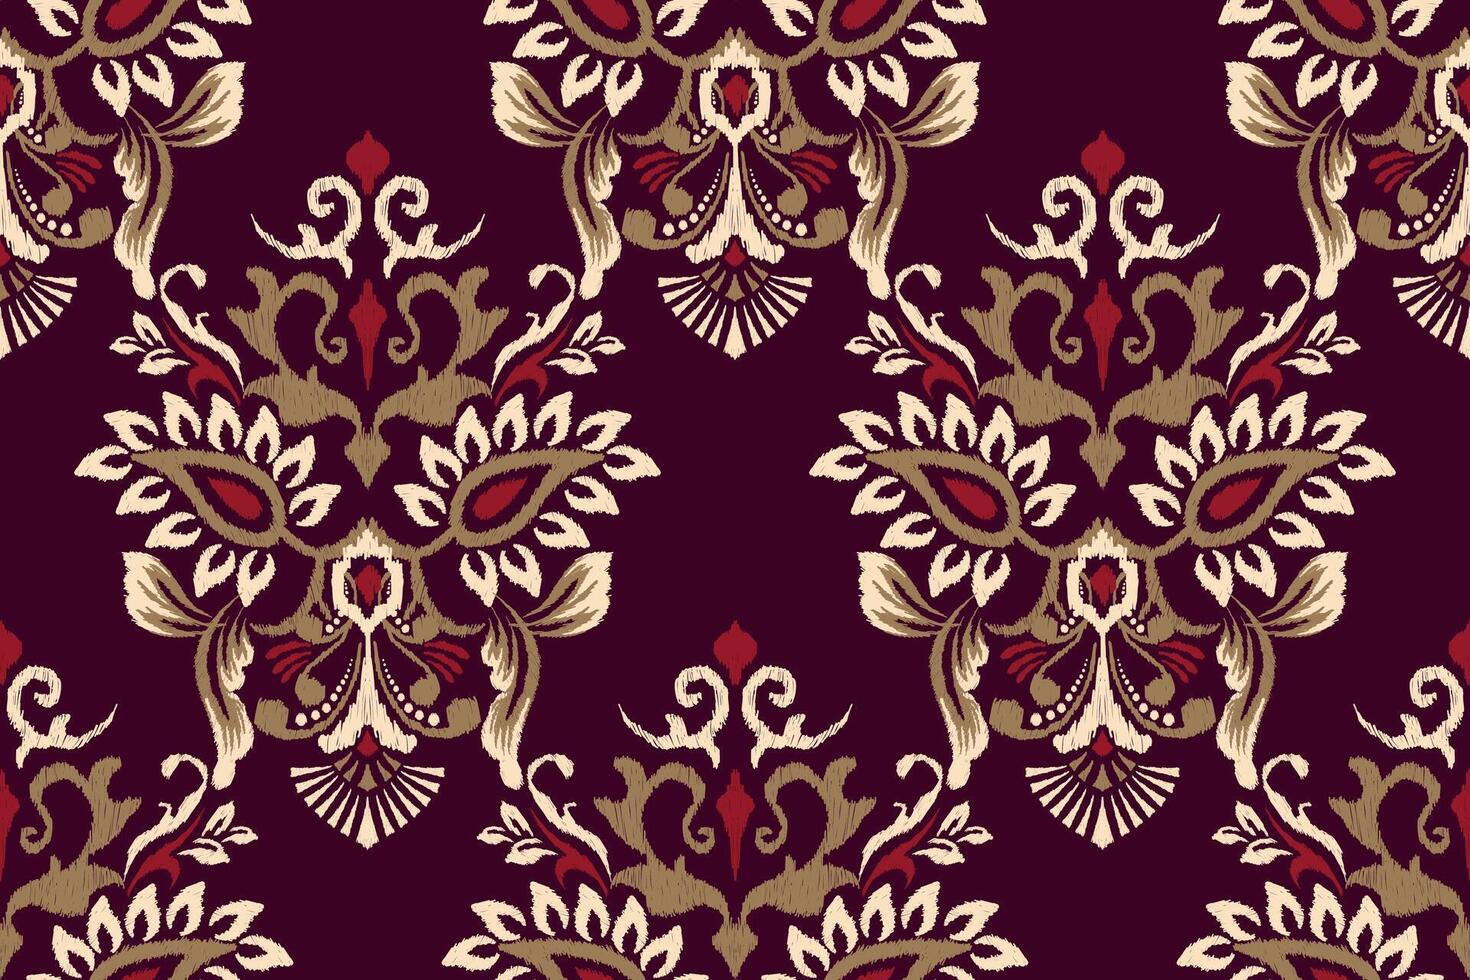 barroco ikat floral sin costura modelo en púrpura fondo.ikat étnico oriental bordado vector ilustracion.azteca estilo,mano dibujado, cordones.diseño para textura,tela,ropa,decoración,superficie impresión.